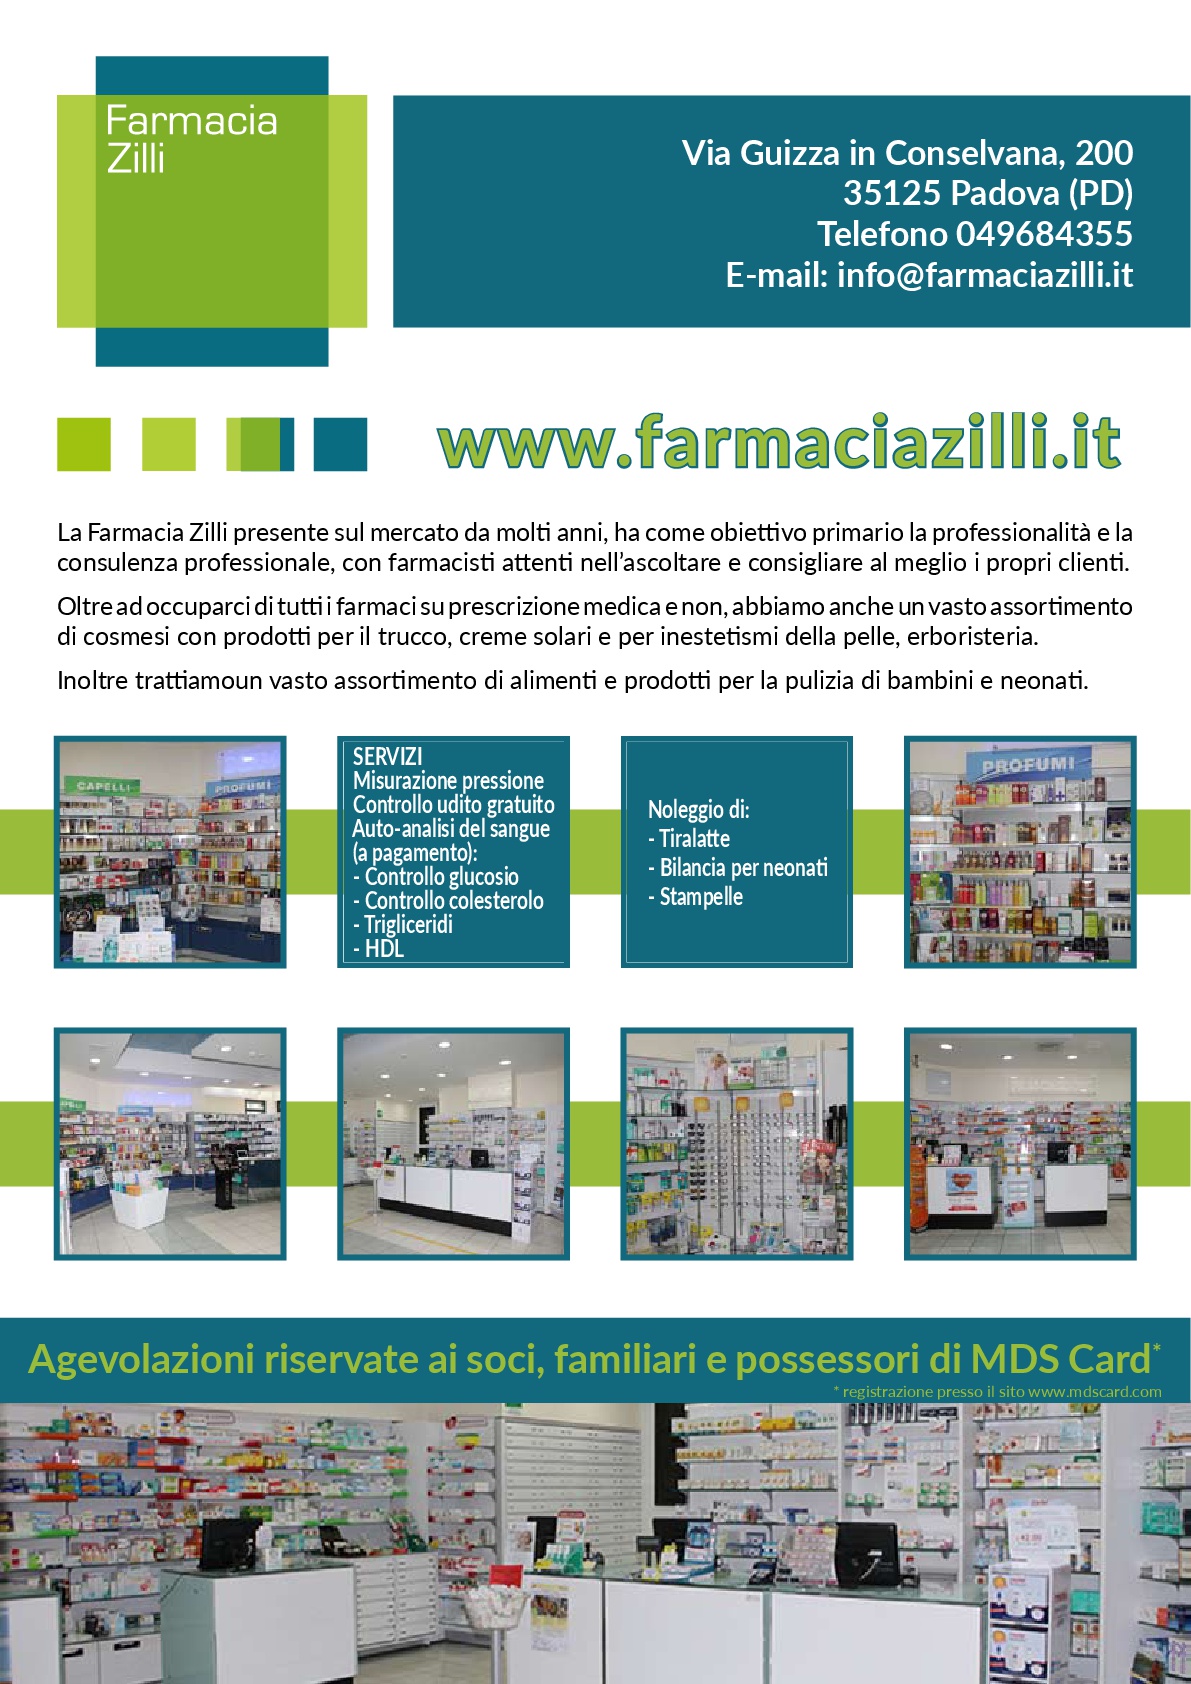 Foto 6 - La miglior farmacia erboristeria a Padova è la Farmacia Zilli!